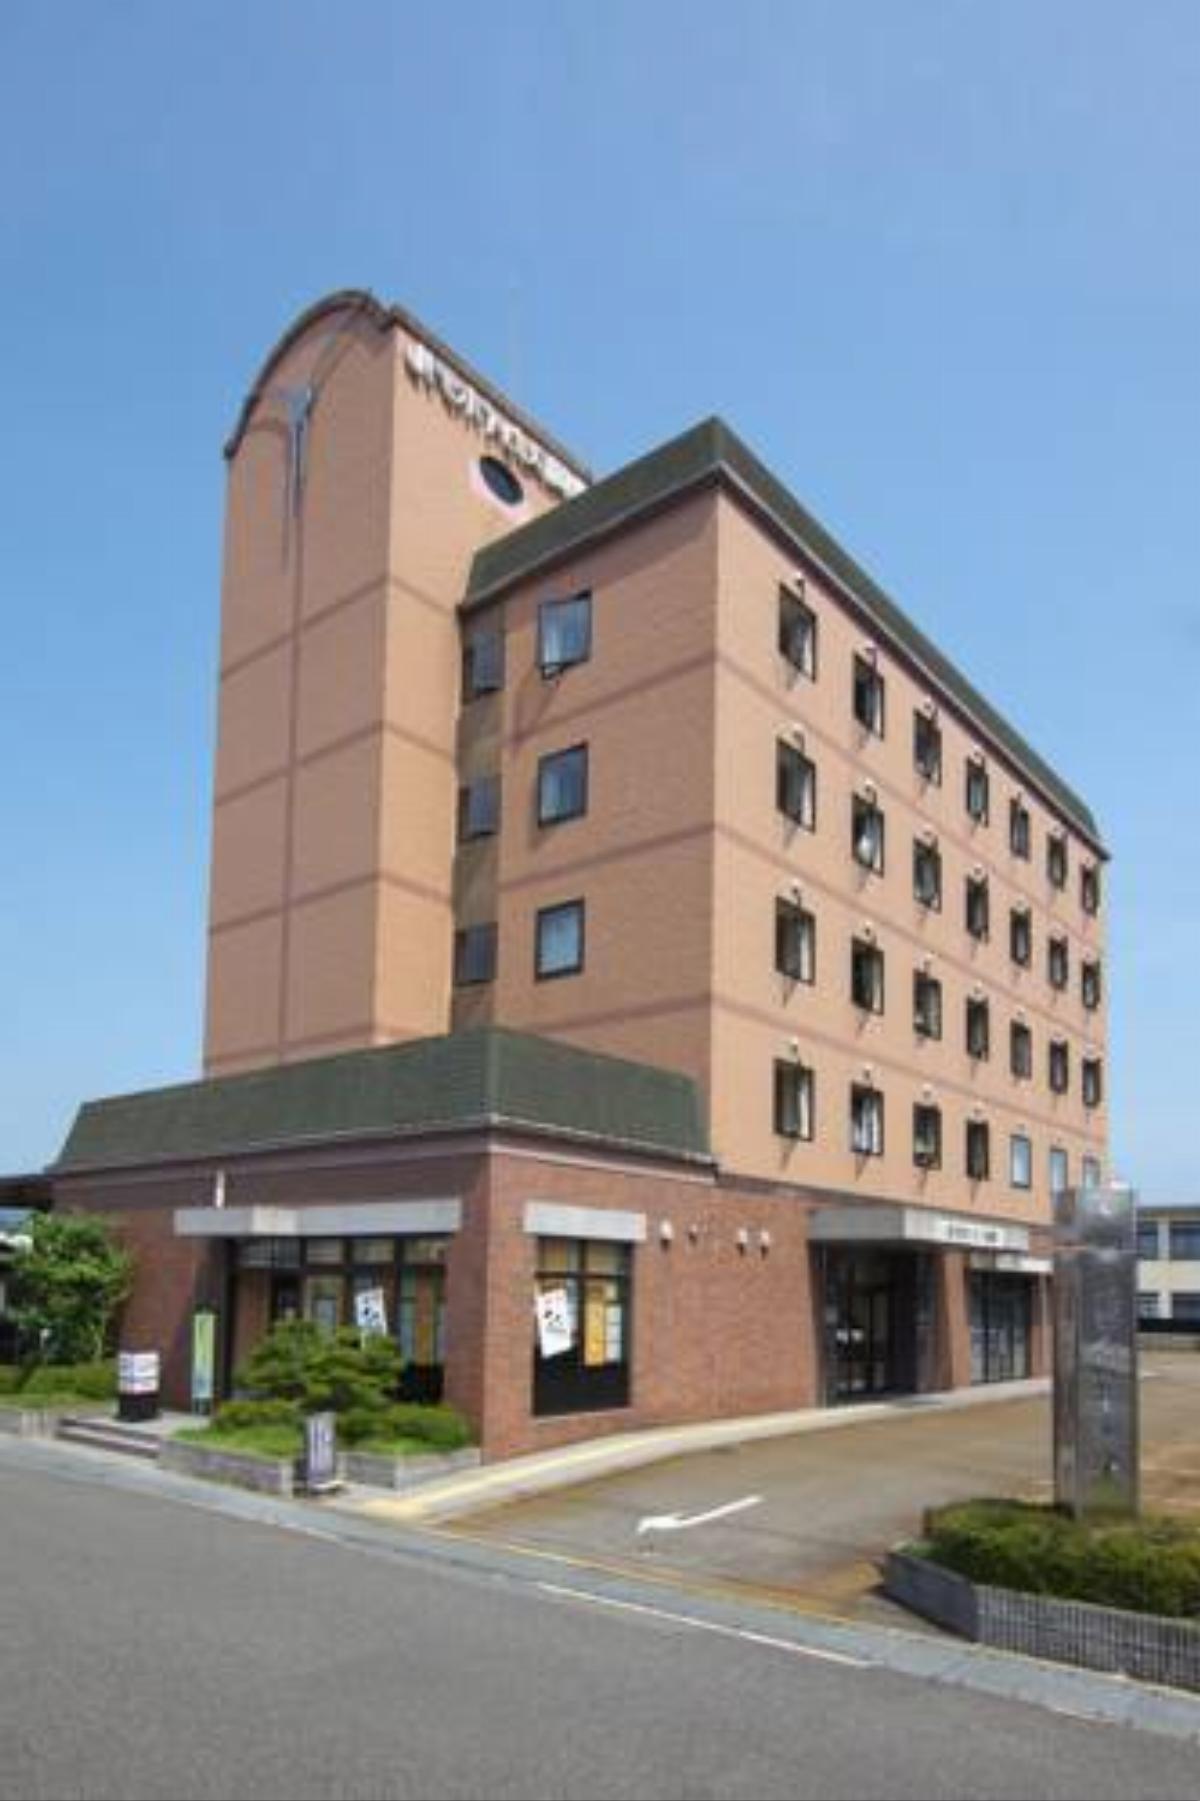 Toyooka Sky Hotel